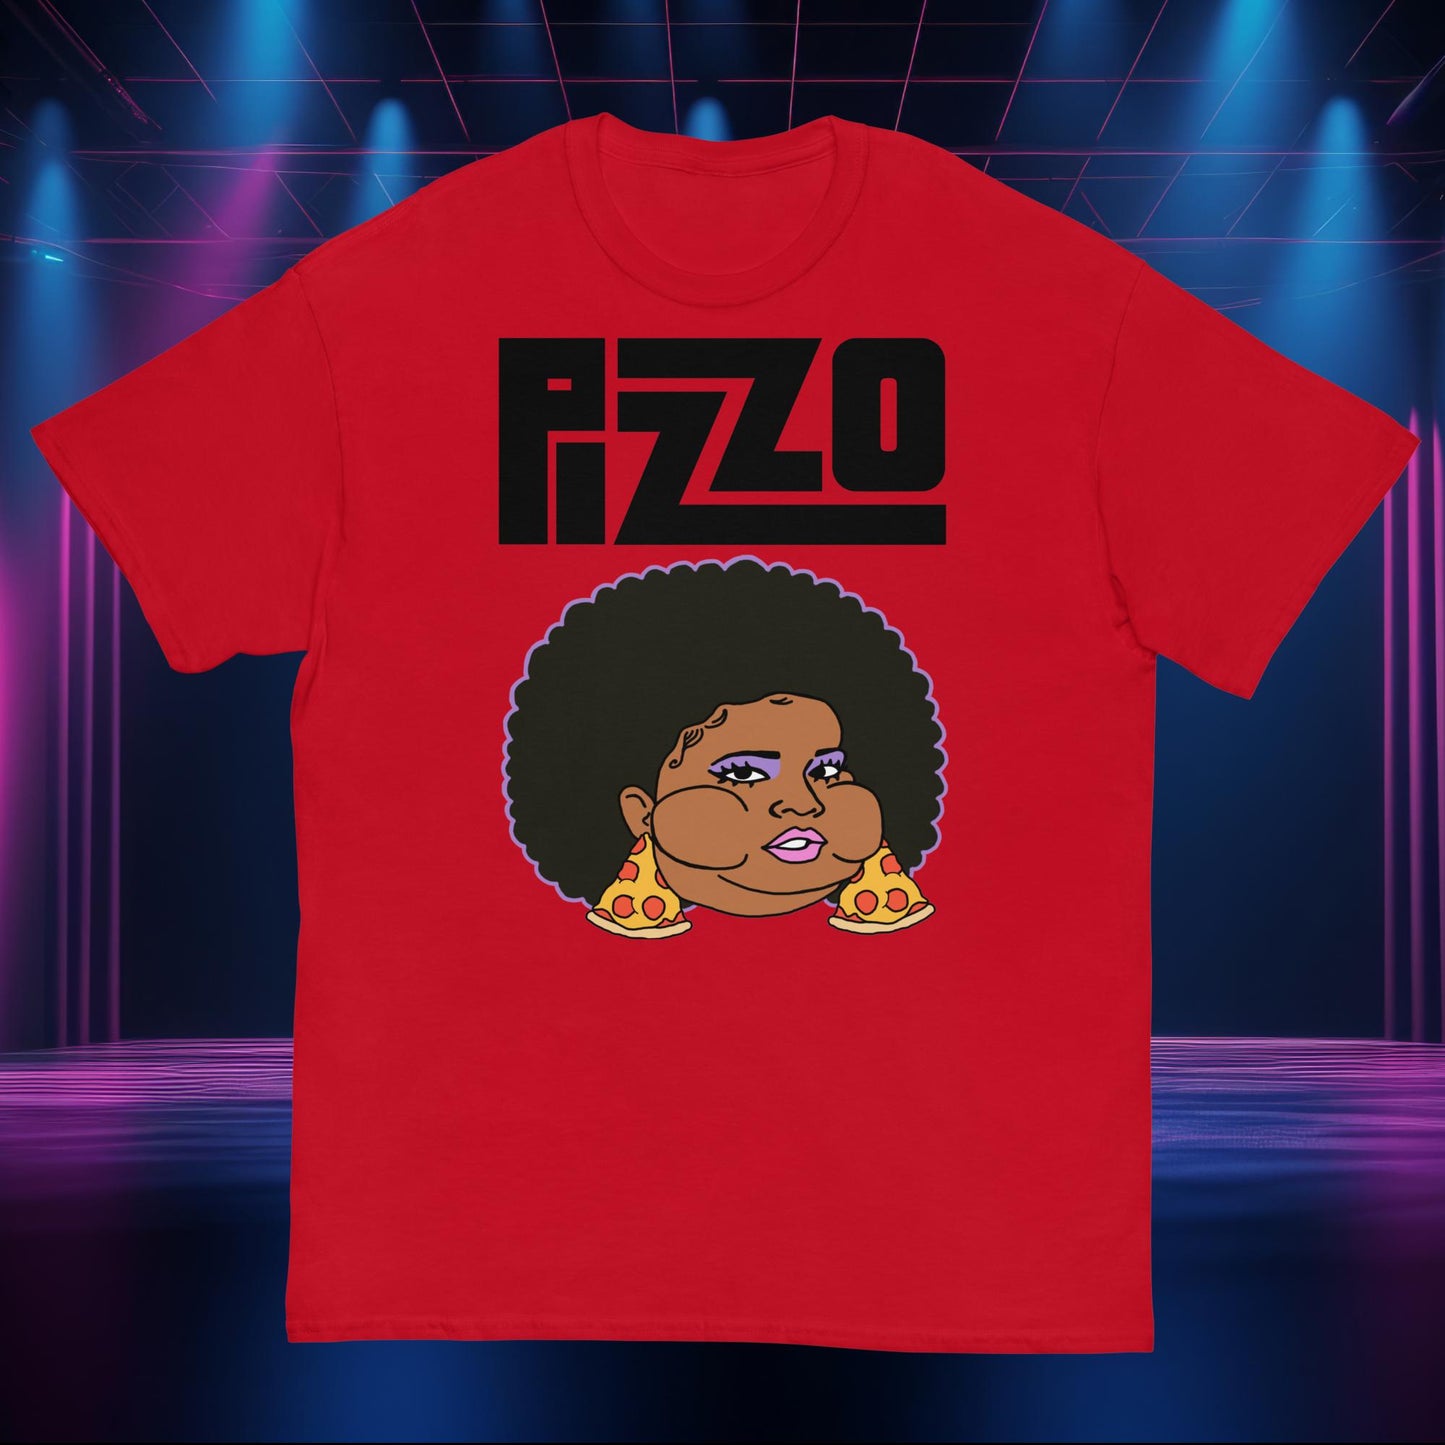 Pizzo Lizzo Pizza Lizzo Merch Lizzo Gift Body Positivity Body empowerment Lizzo shirt Next Cult Brand